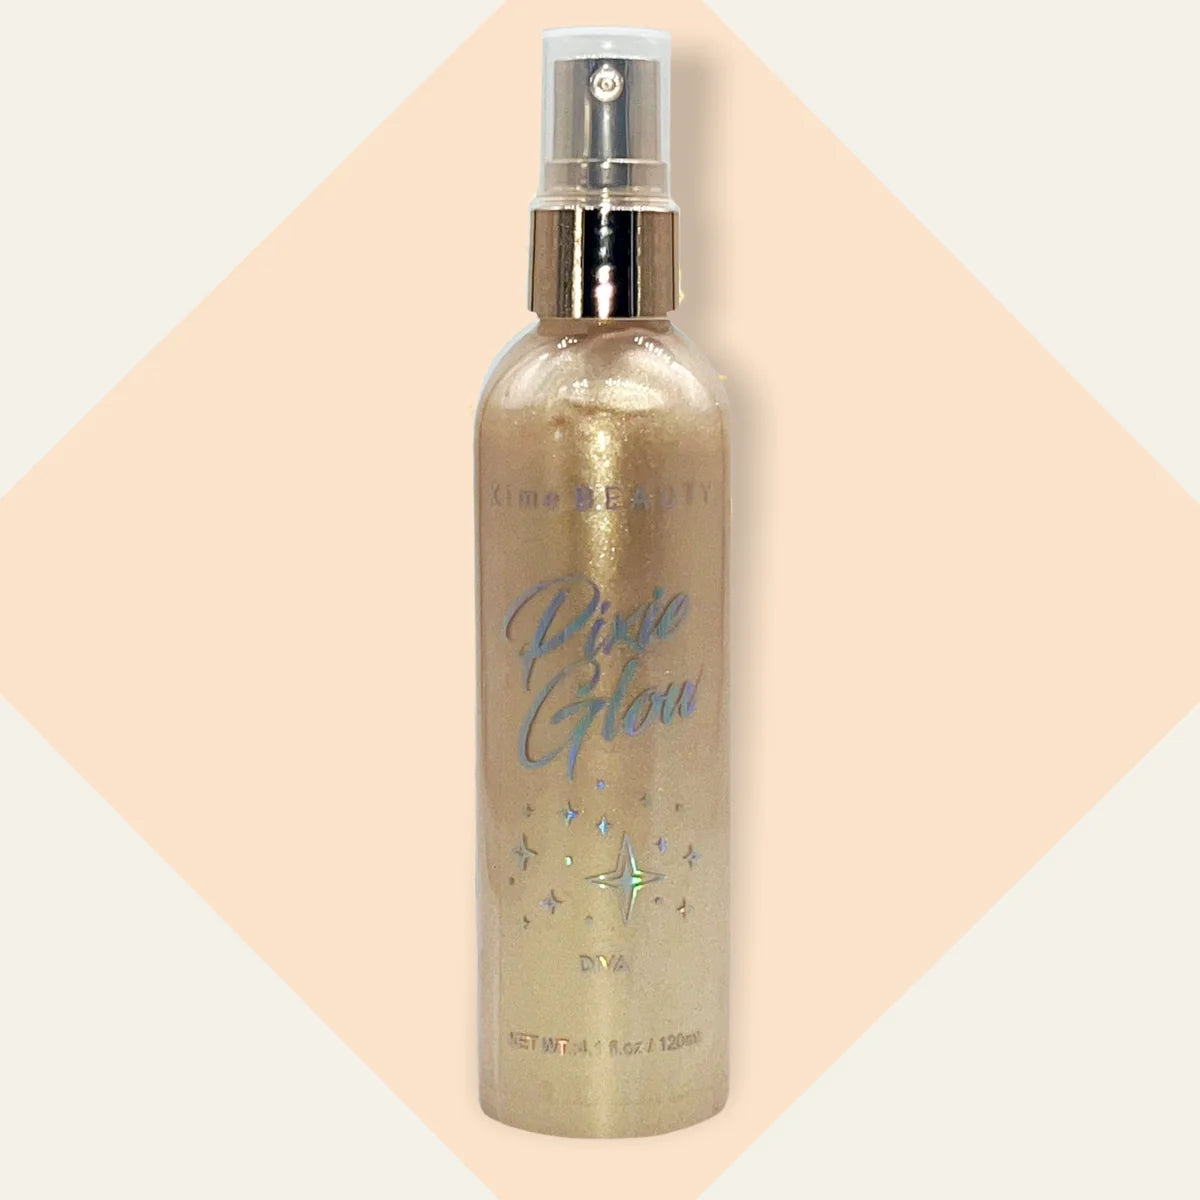 XIME BEAUTY Pixie Glow Body Spray DIVA